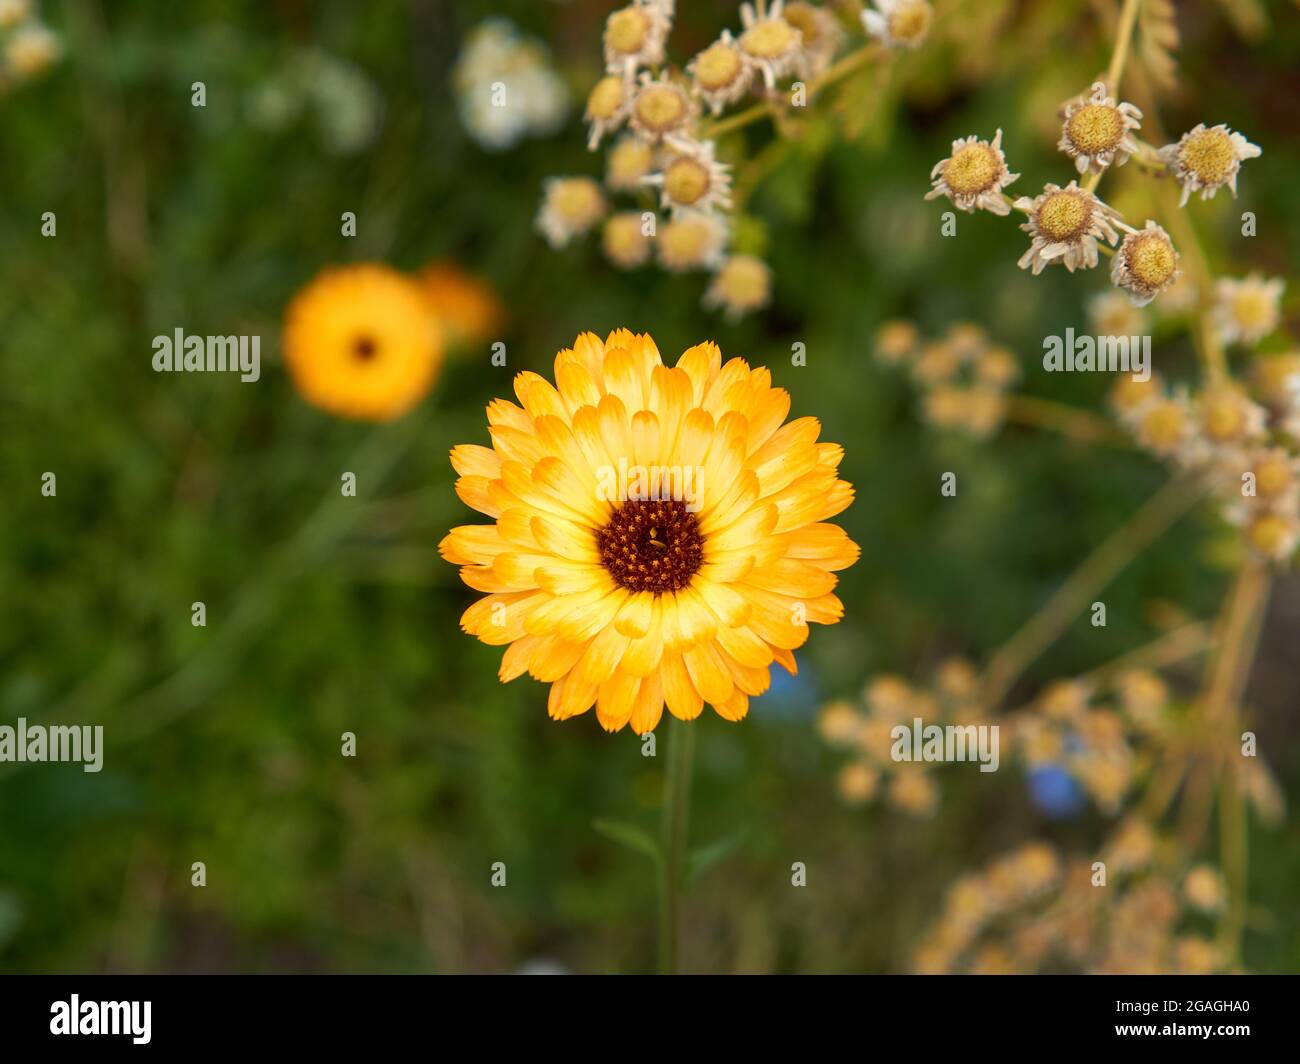 Primer plano de una flor de Calendula amarilla floreciendo en verano Foto de stock